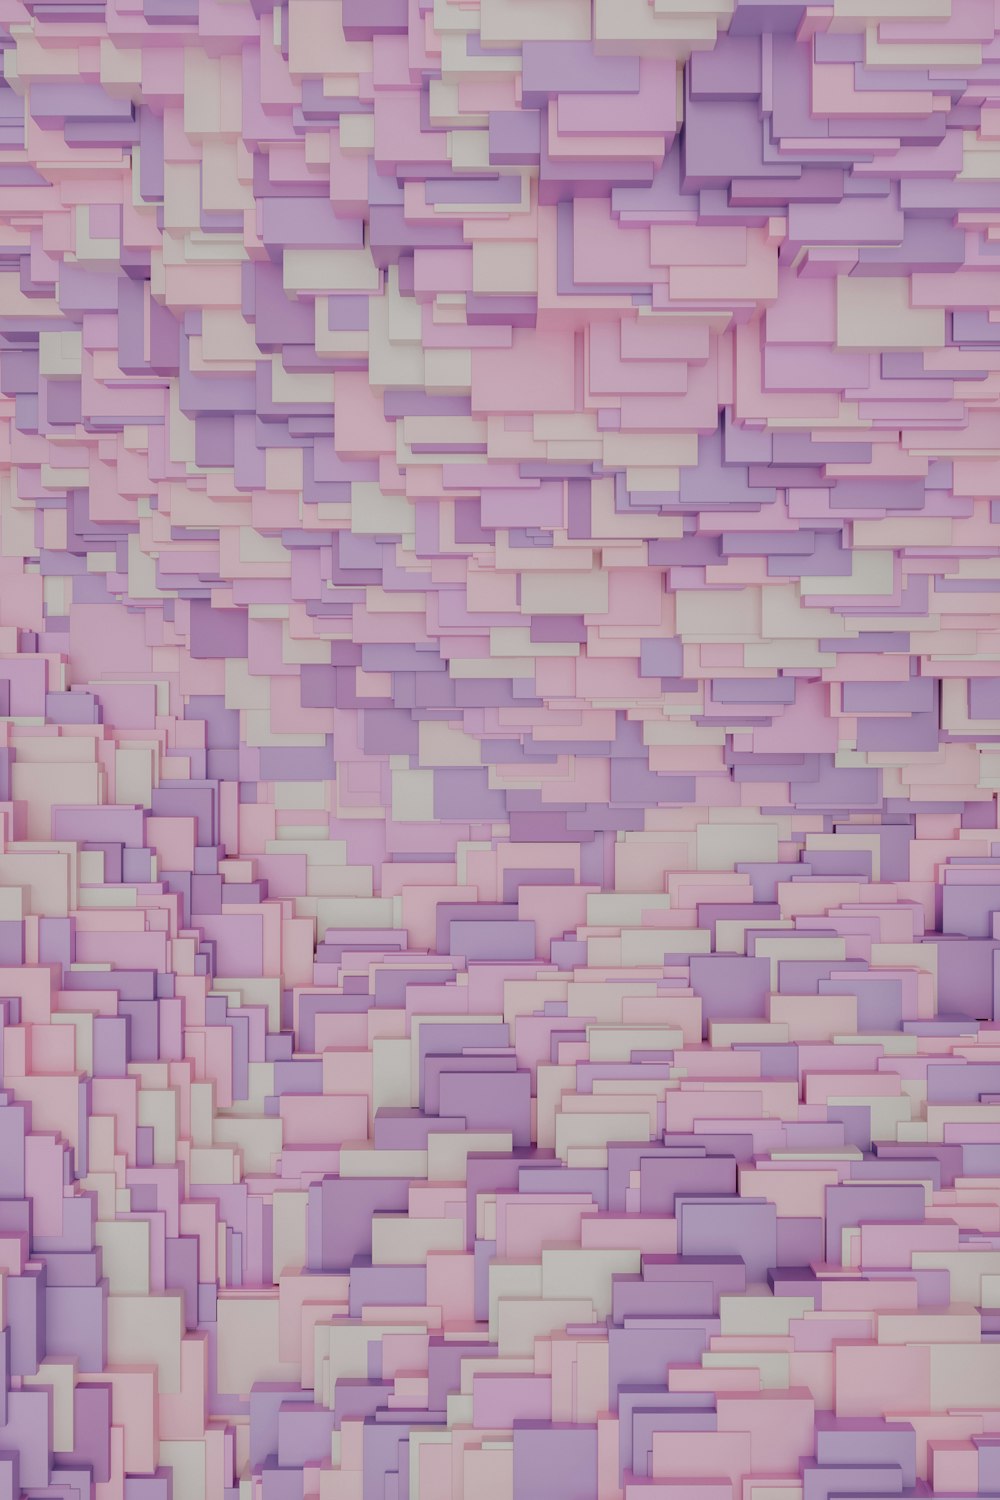 eine sehr große Menge an lila Quadraten auf rosa Hintergrund